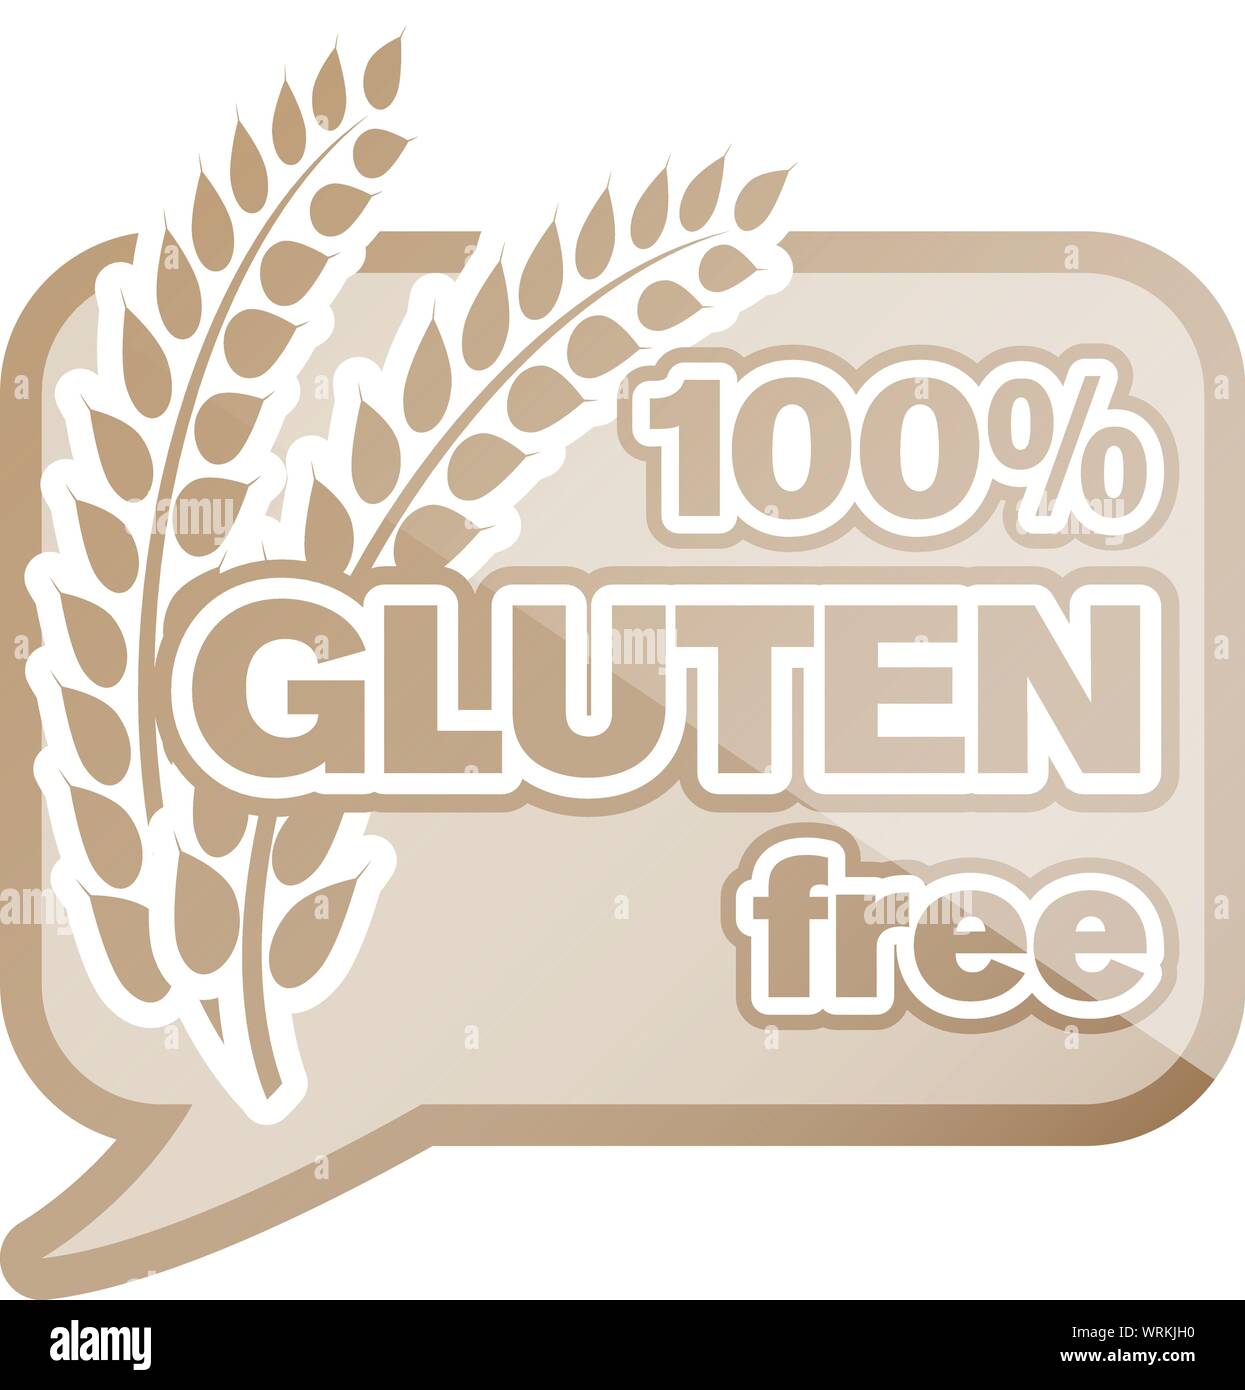 100 percent gluten free sticker or logo vector illustration Stock Vector